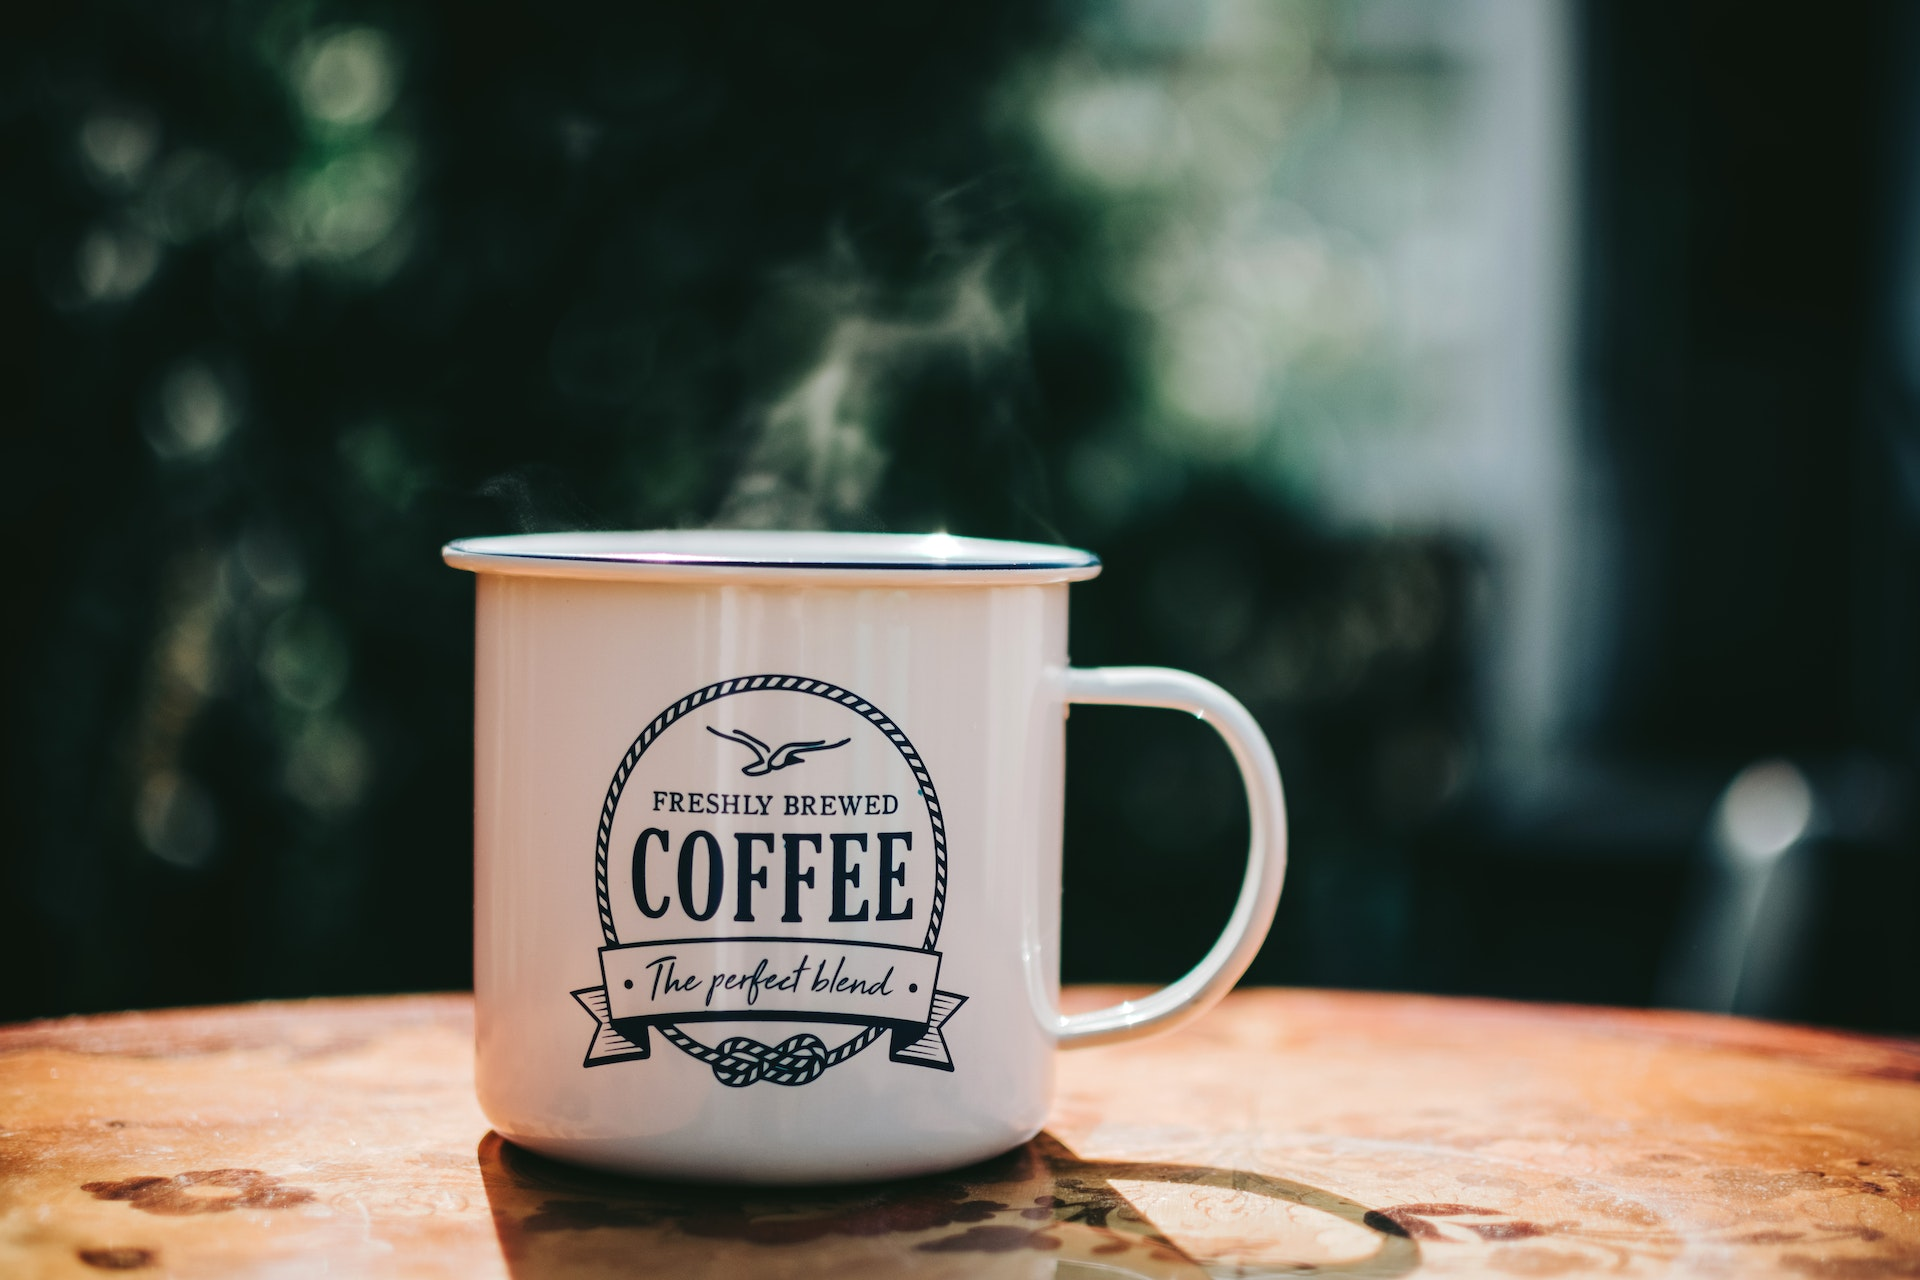 Le cafe et la culture : L’impact social derriere chaque tasse